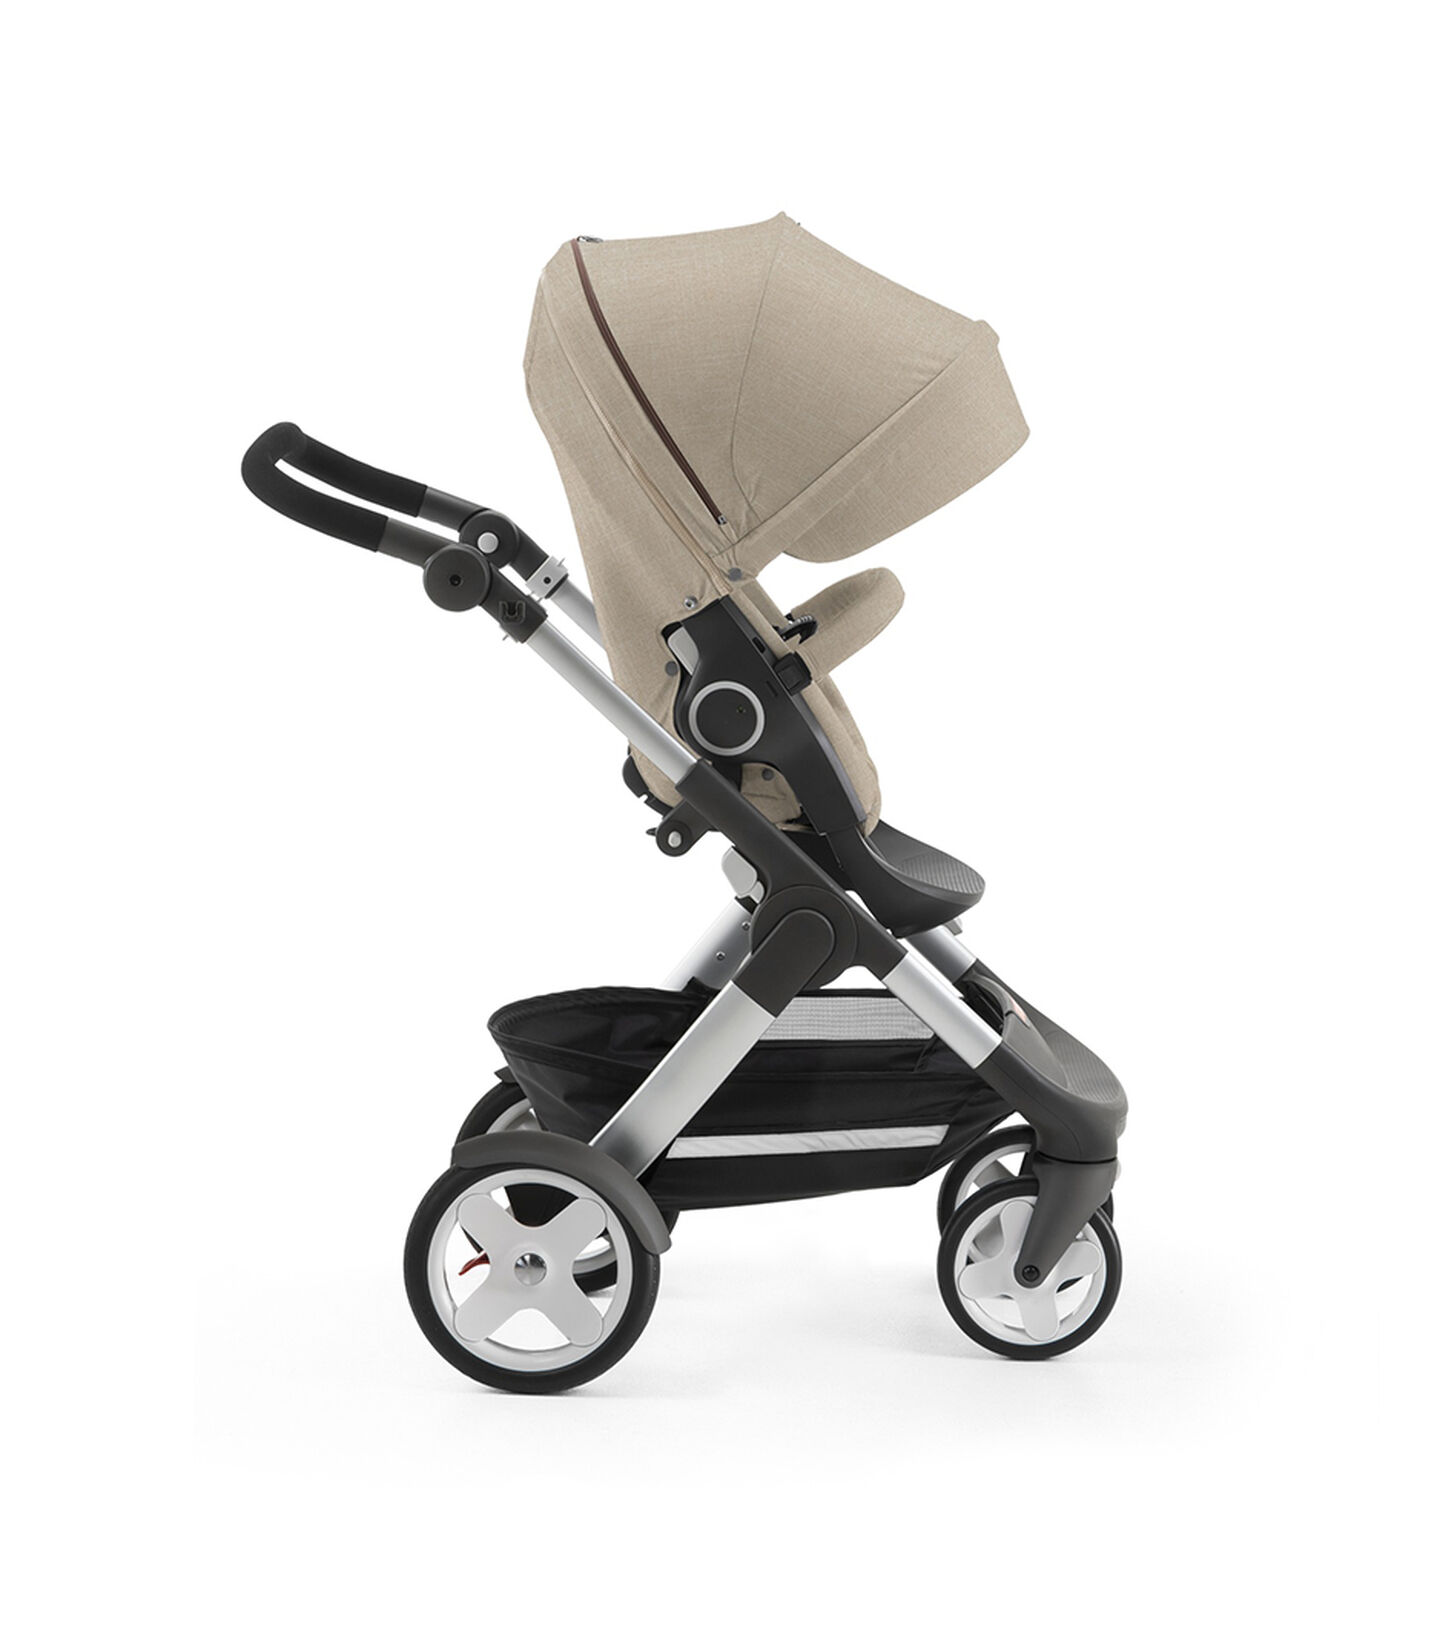 Stokke® Trailz with Stokke® Stroller Seat, forward facing, active position. Beige Melange. view 5